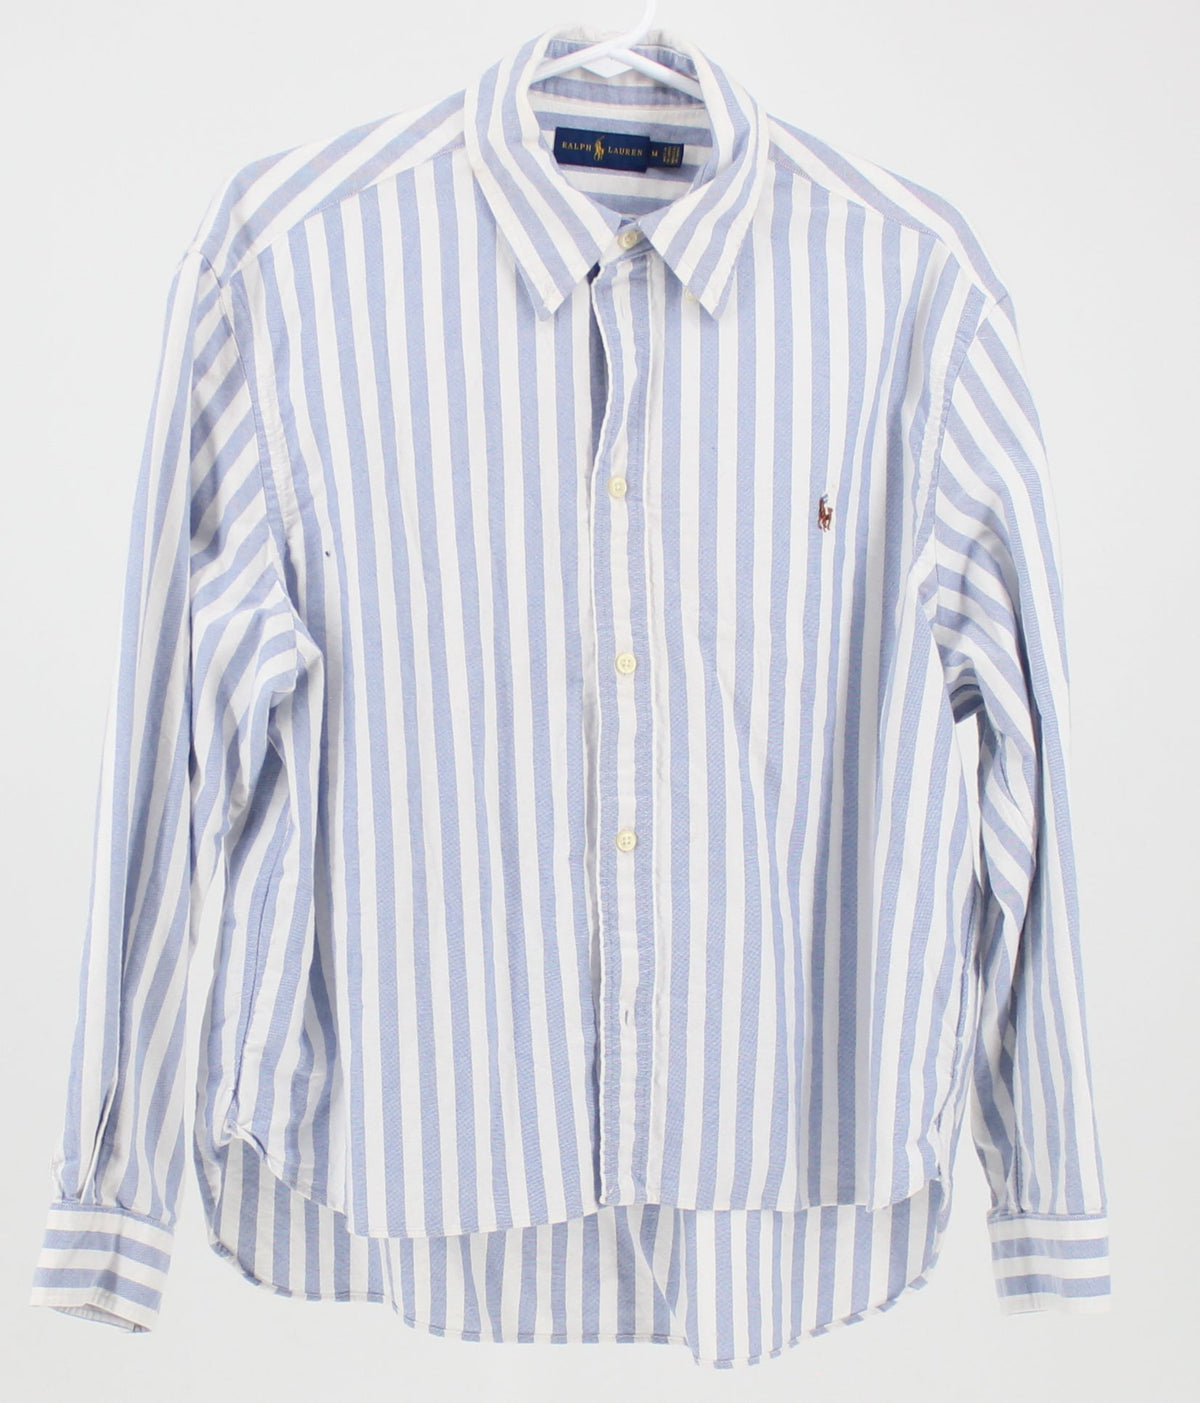 Ralph Lauren striped dress shirt